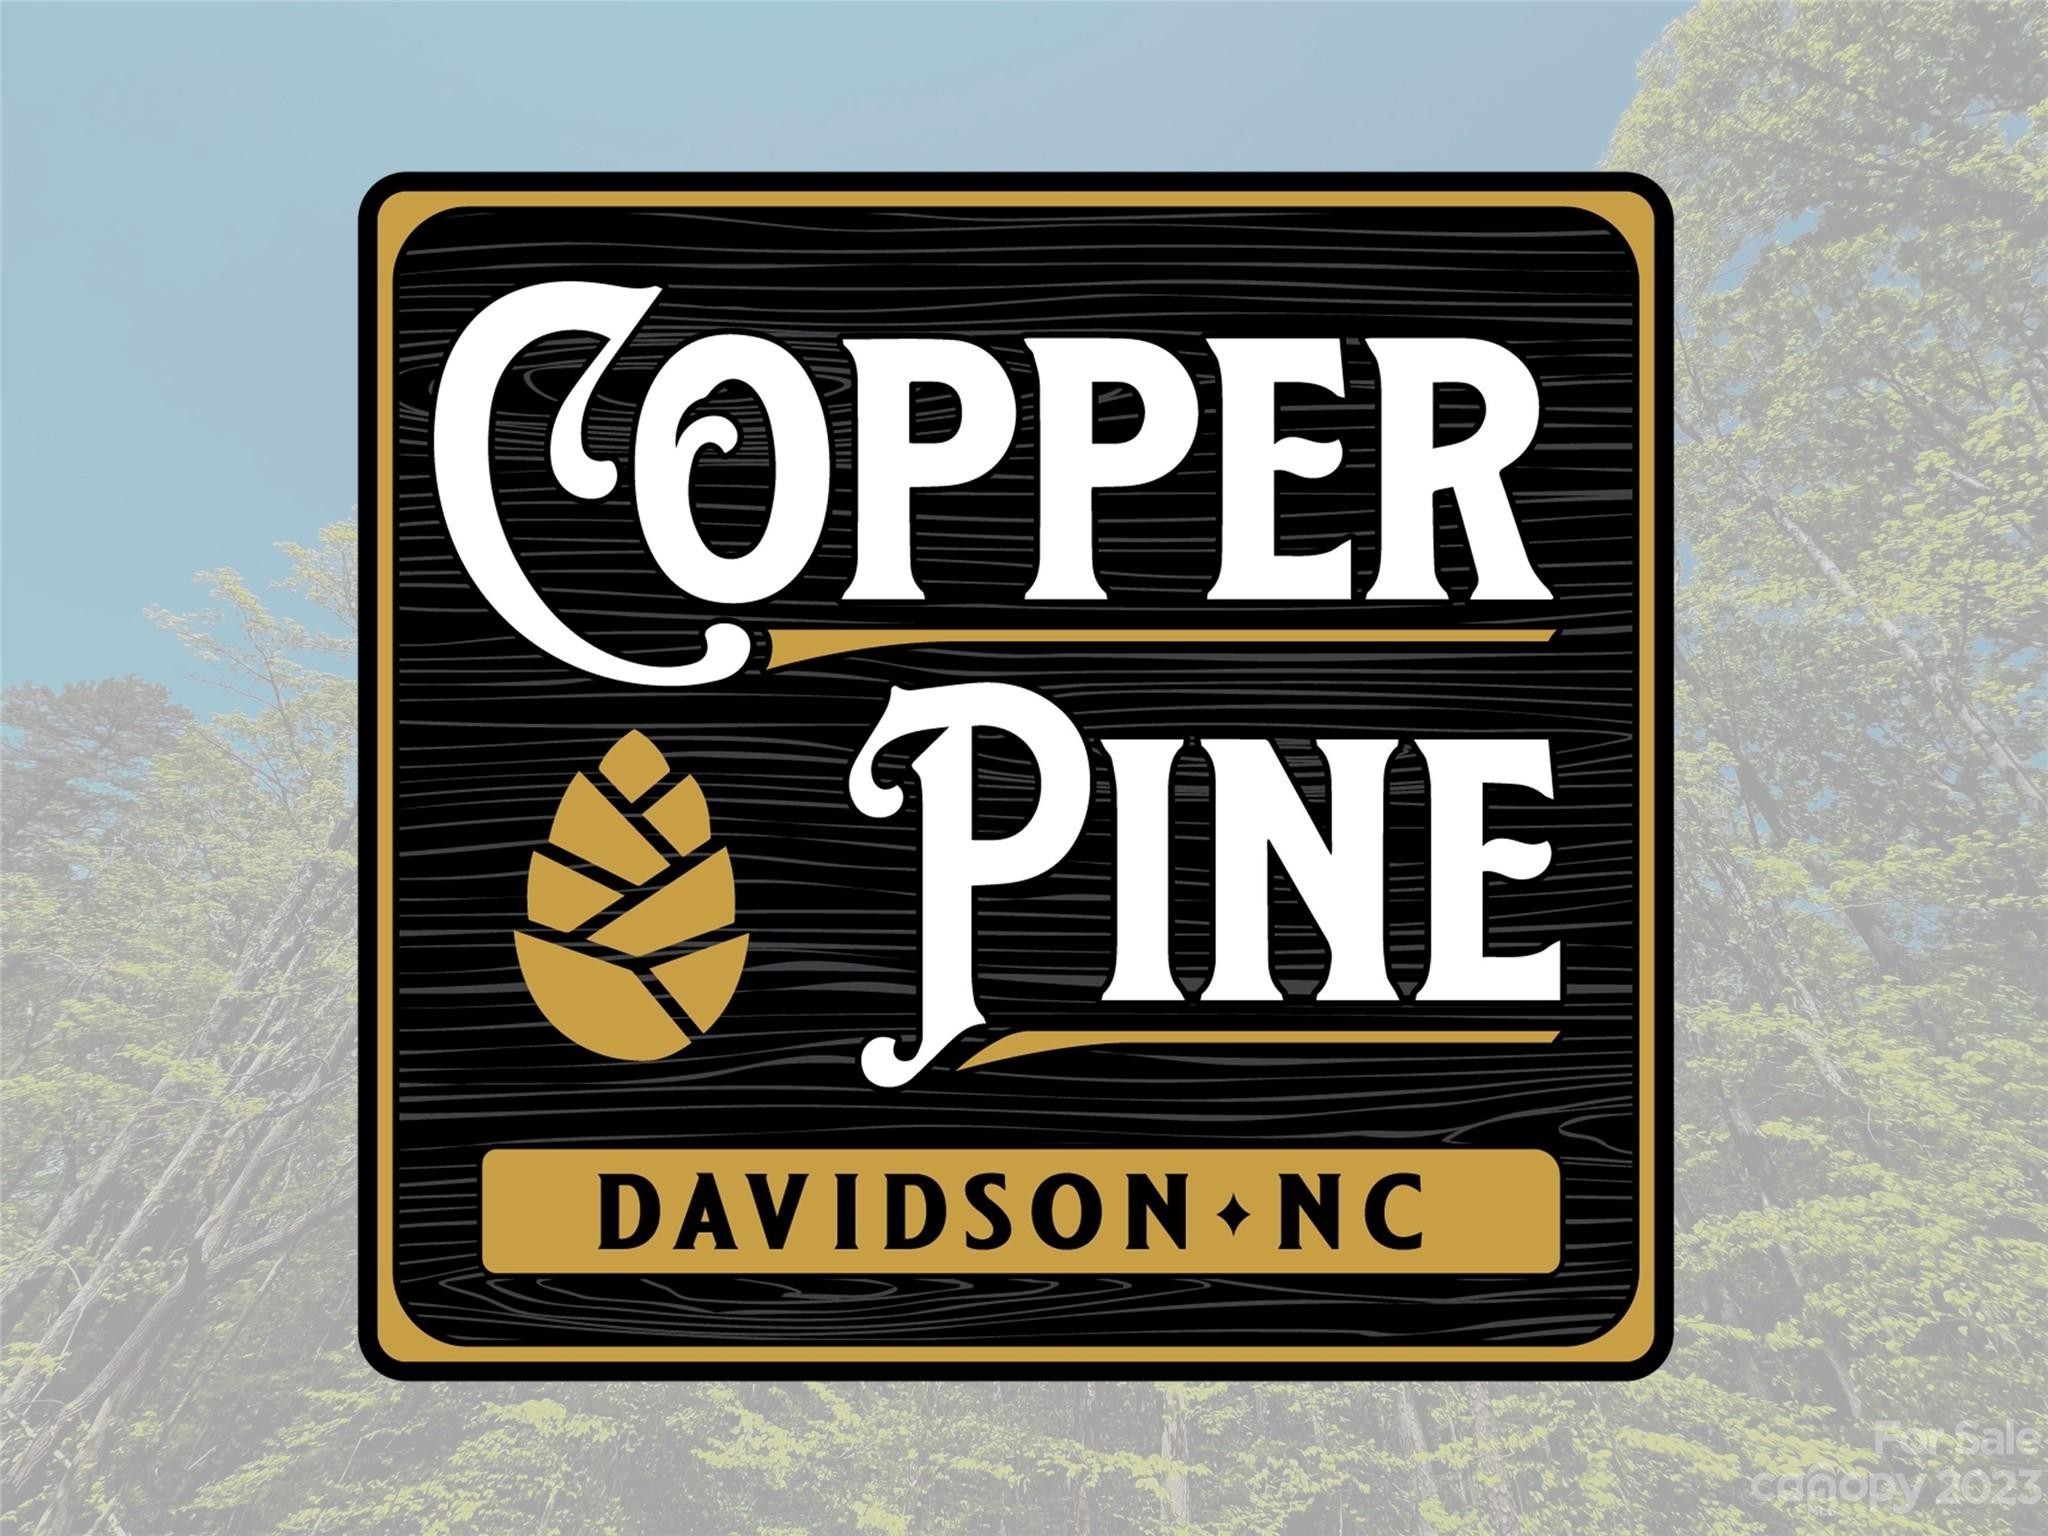 6. 158 Copper Pine Lane